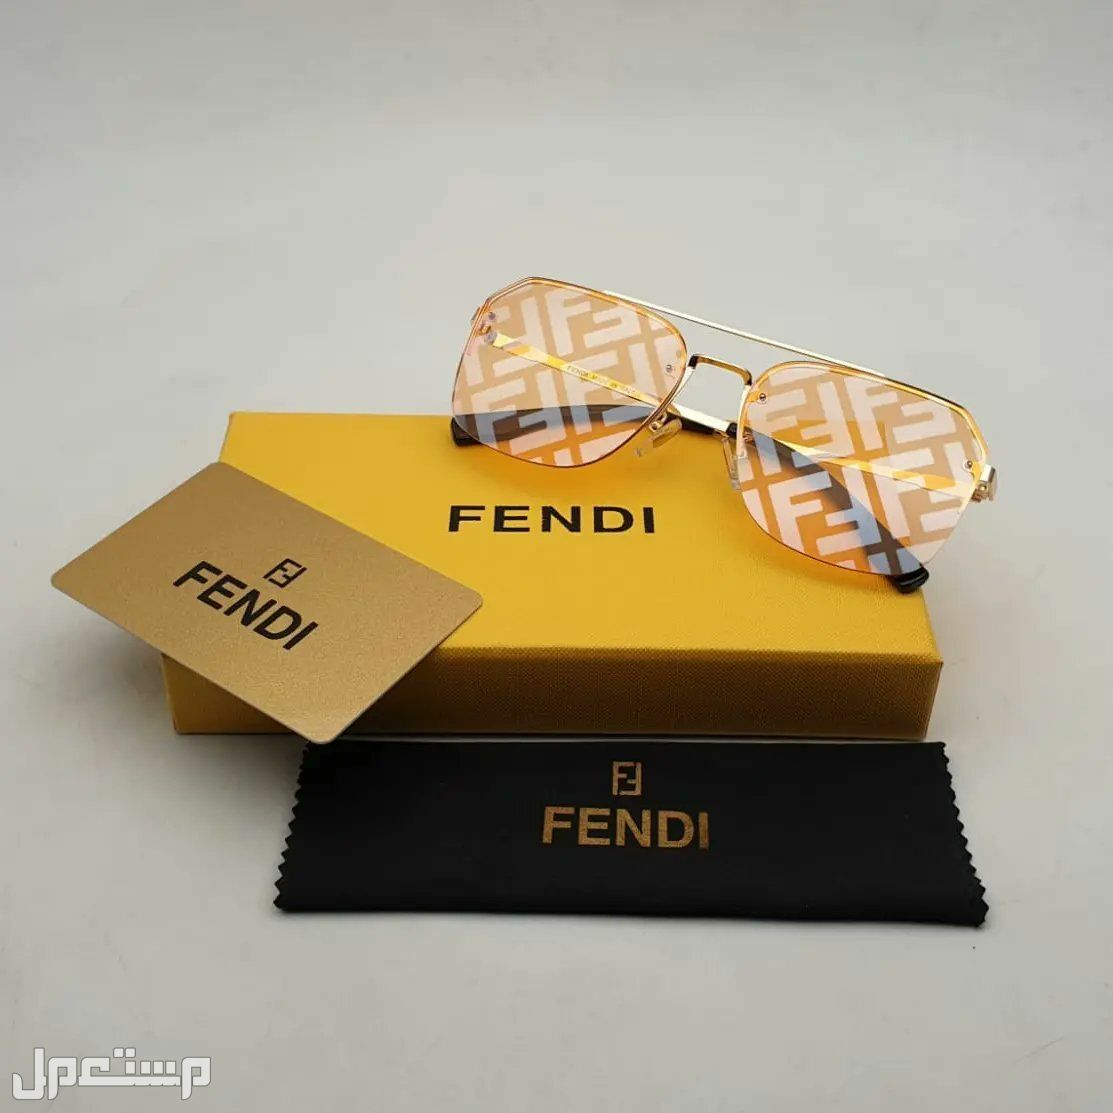 نظارات فندي Fendi النسائية تعرف على مواصفاتها وأسعارها كاملة في جيبوتي فندي مميزة